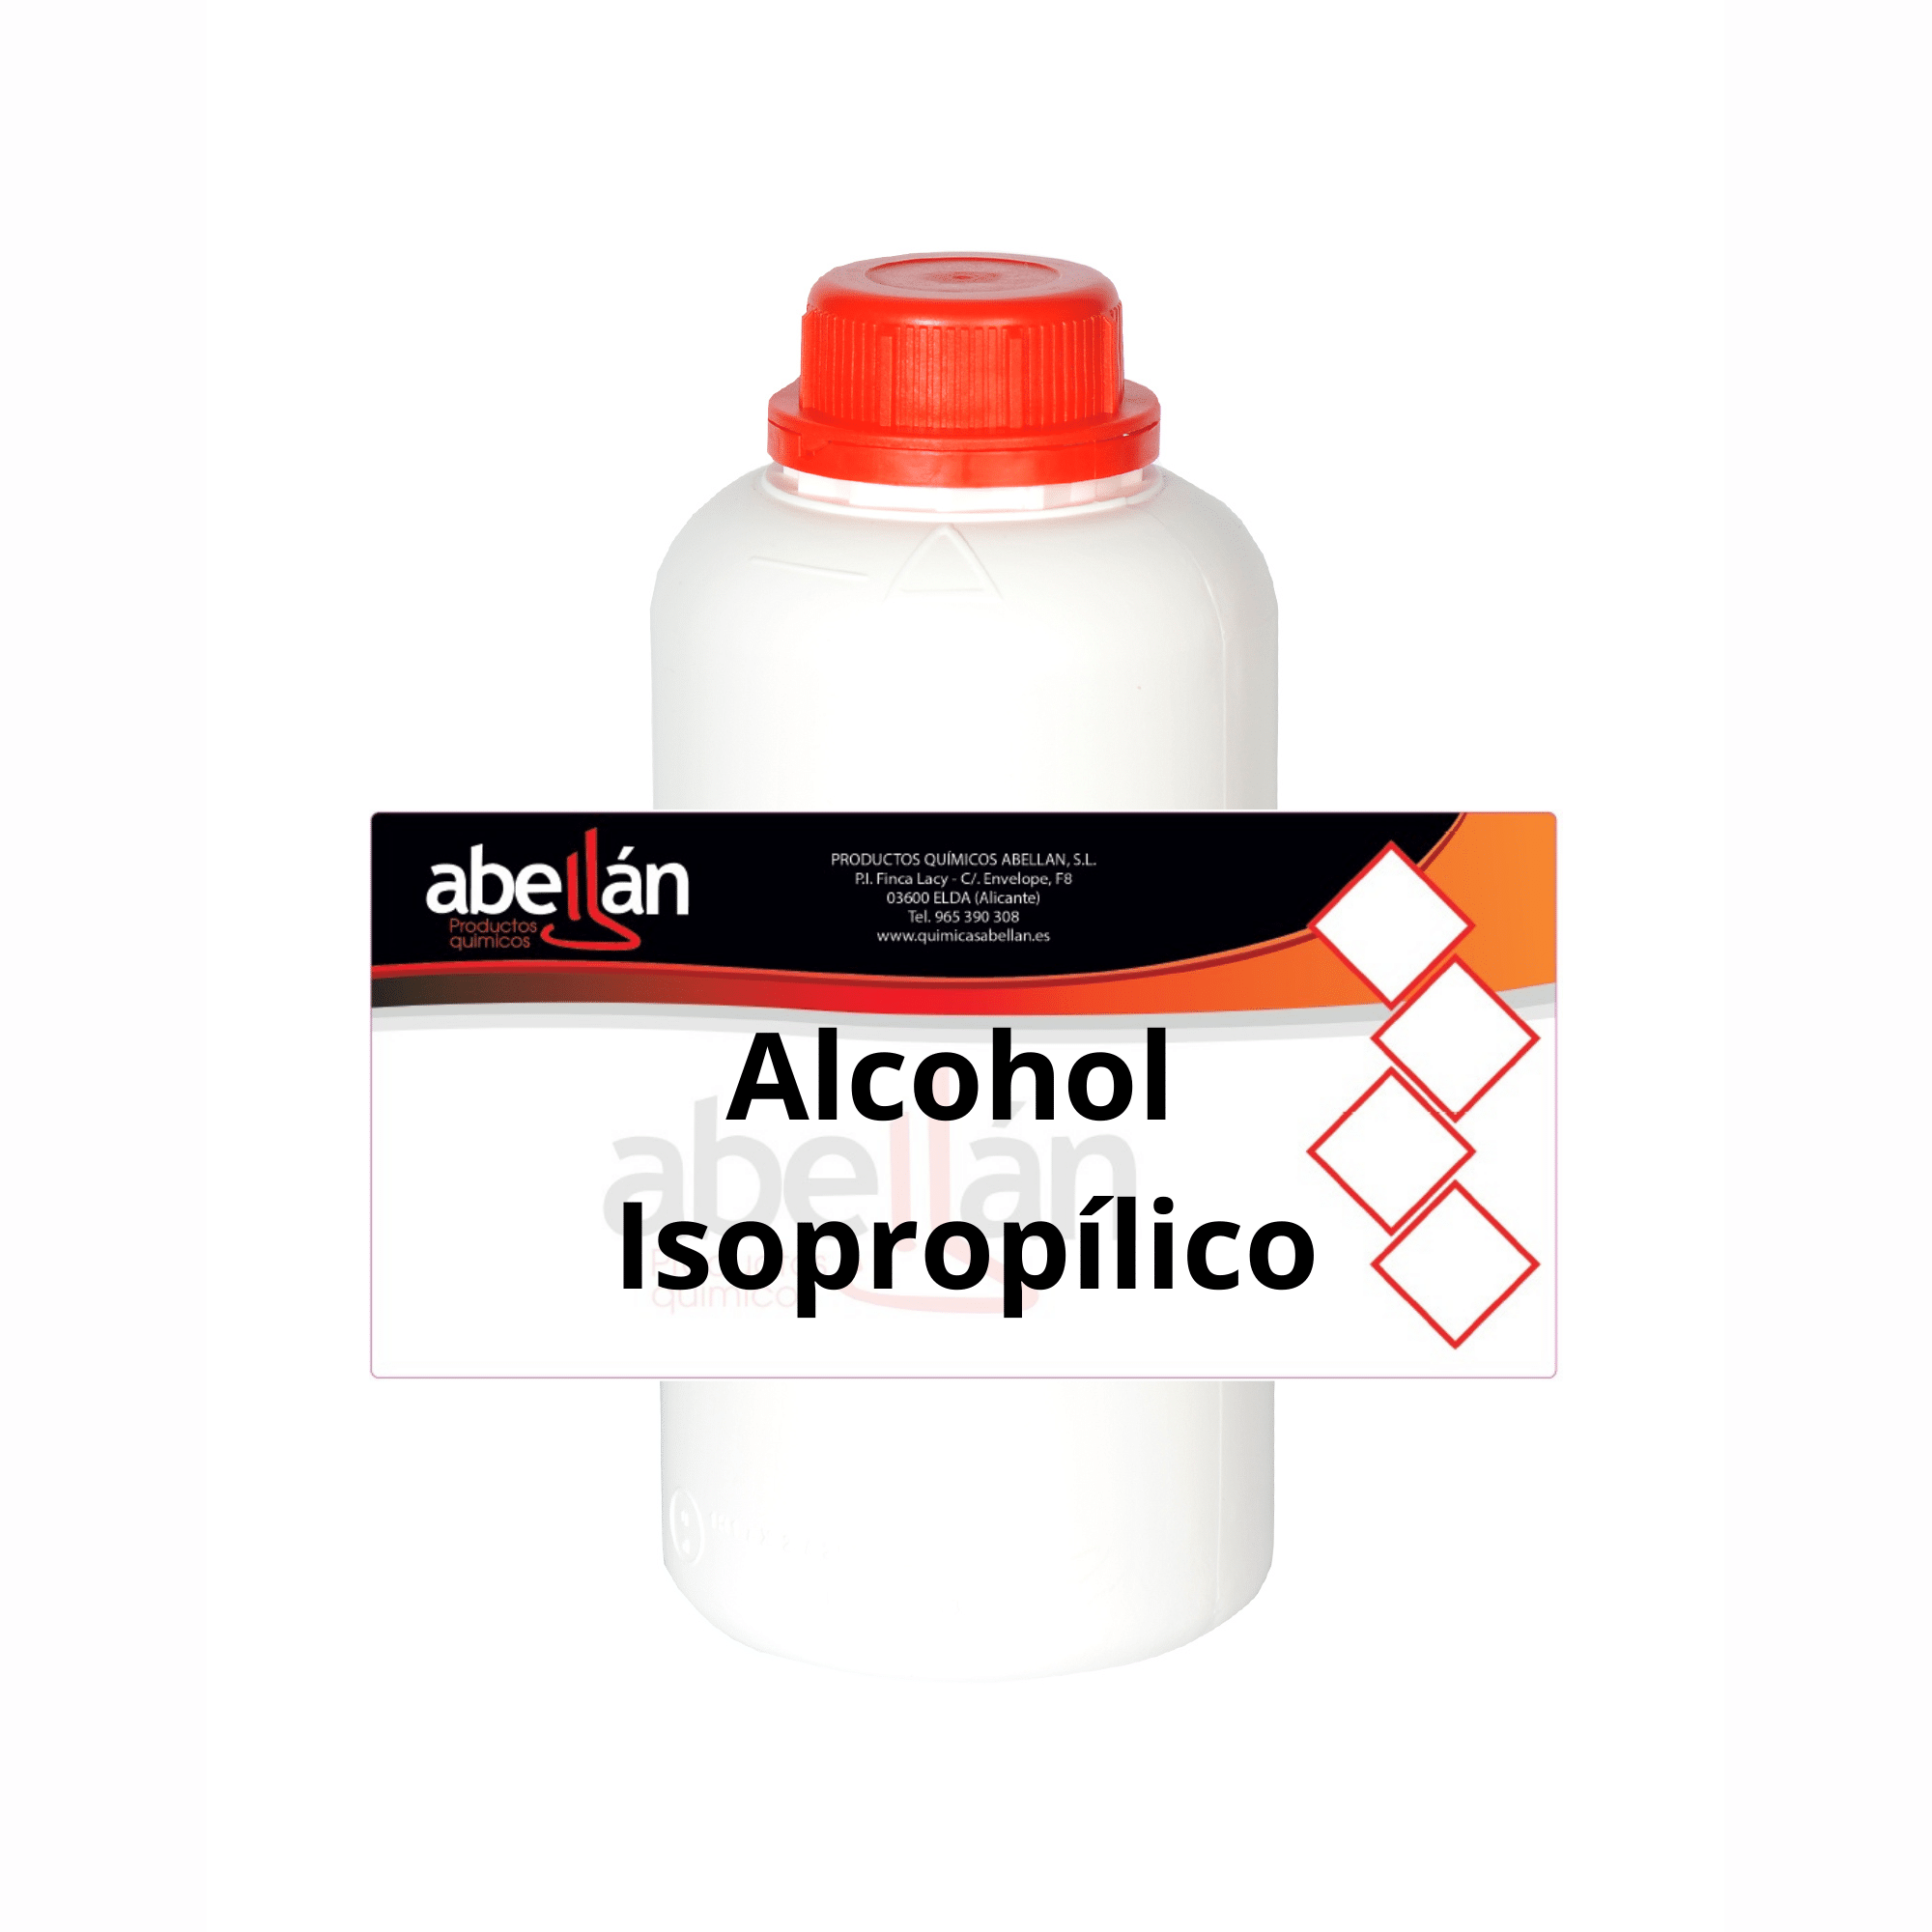 Alcohol isopropílico limpiador de circuitos de 1 litro